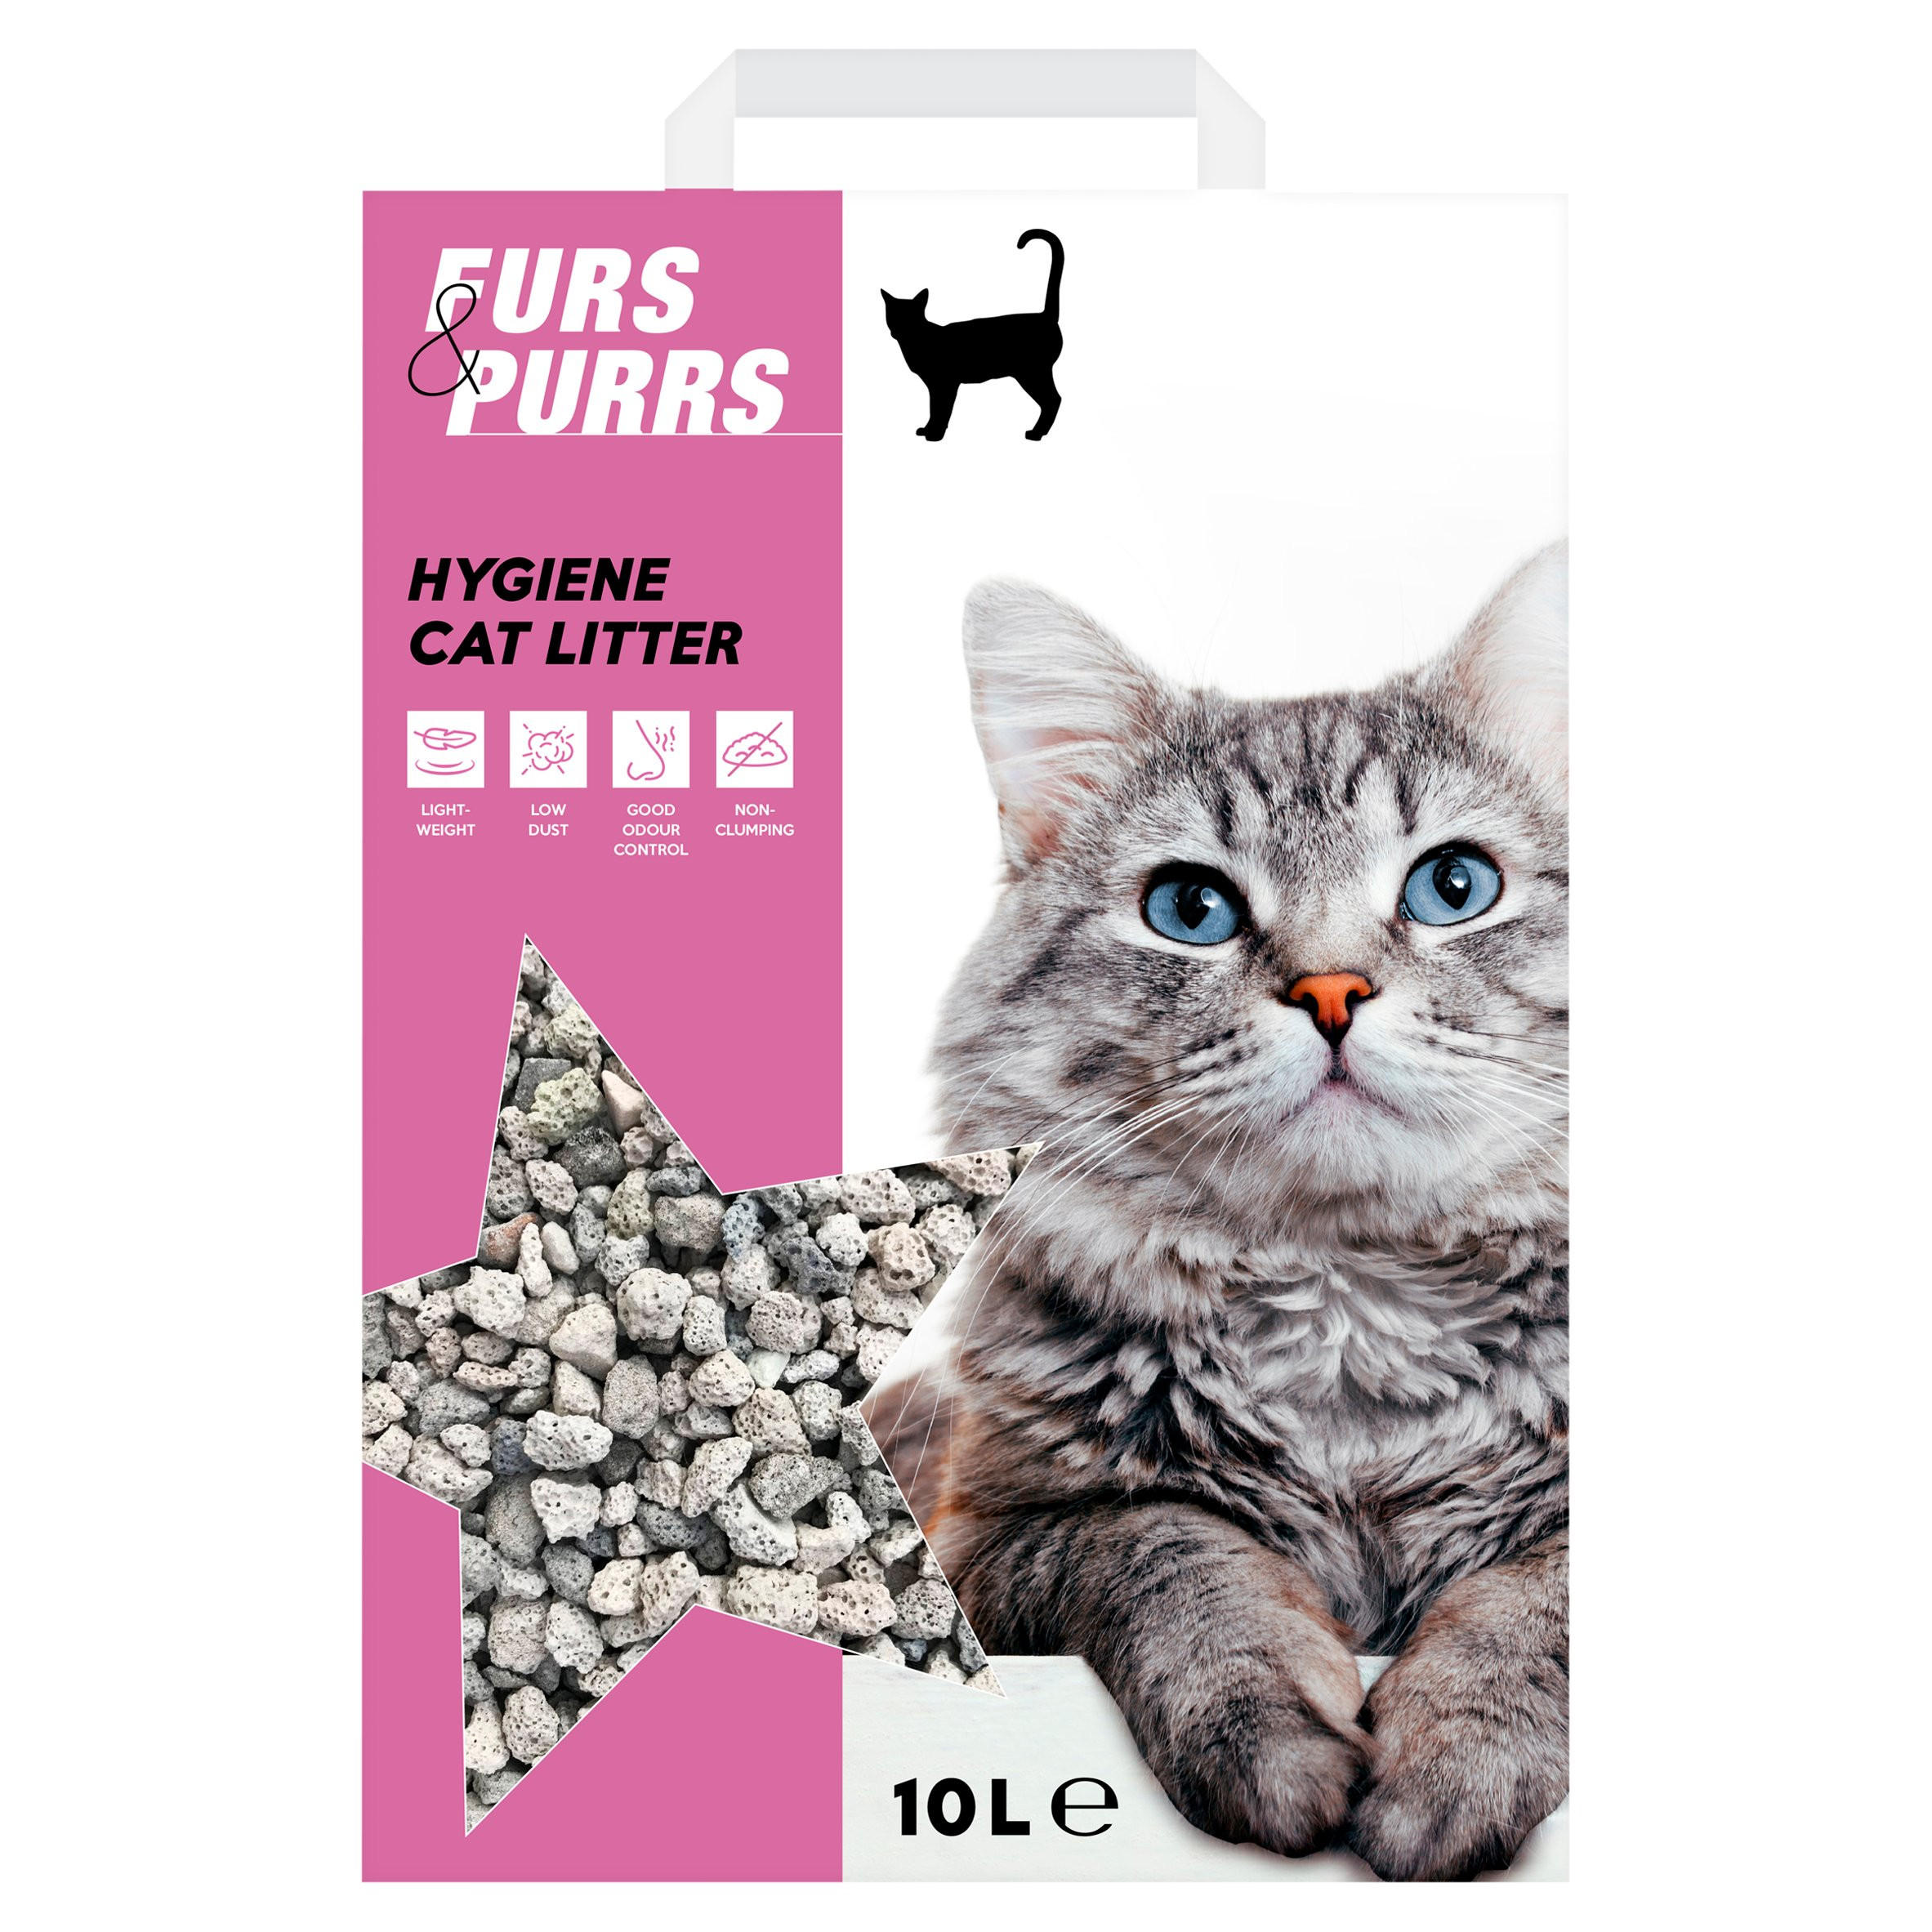 Furs \u0026 Purrs Hygiene Cat Litter 10L 